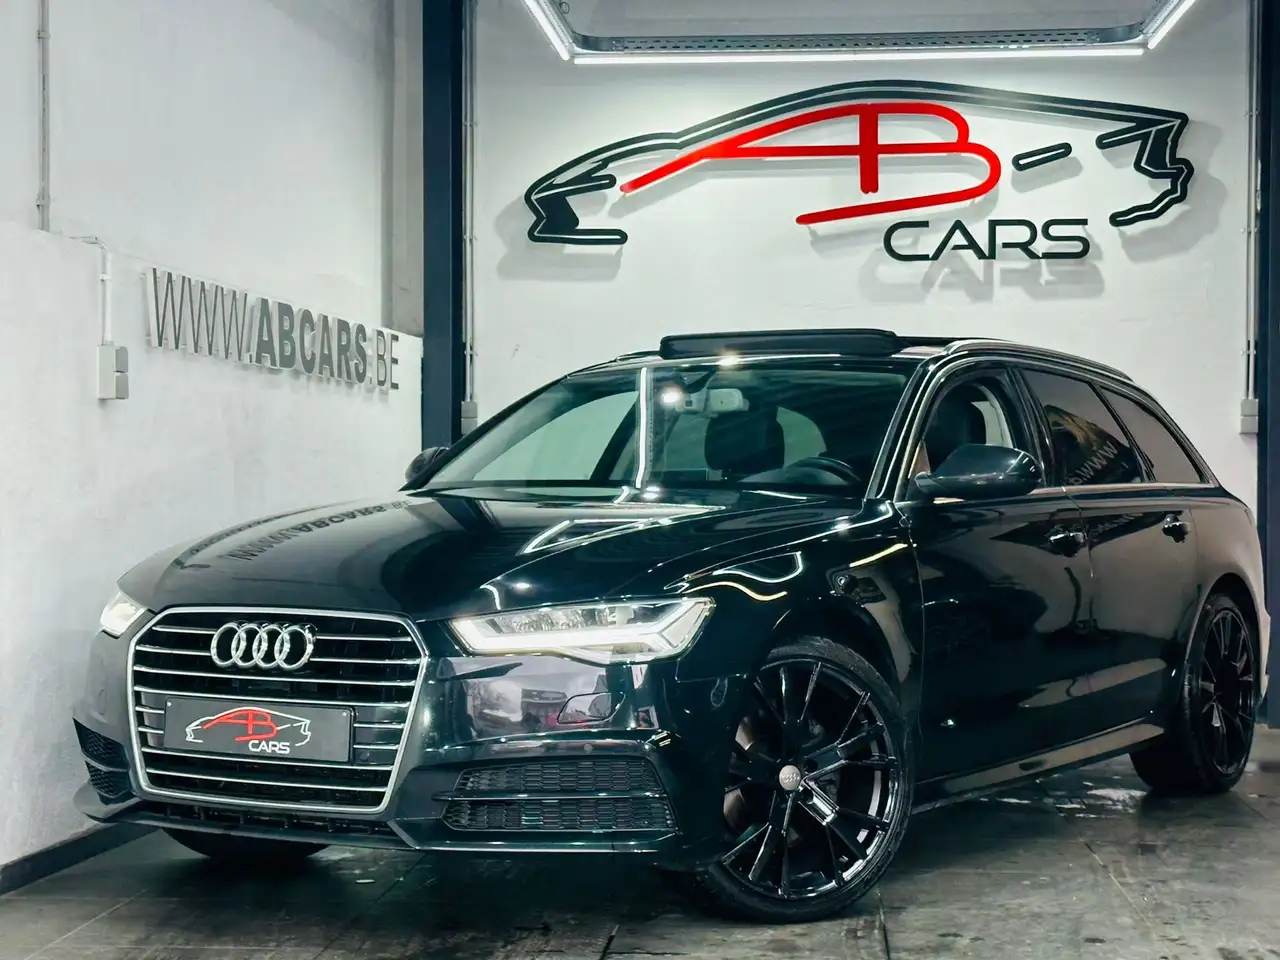 Audi A6 Break in Zwart demo in Herstal voor € 25.990,-